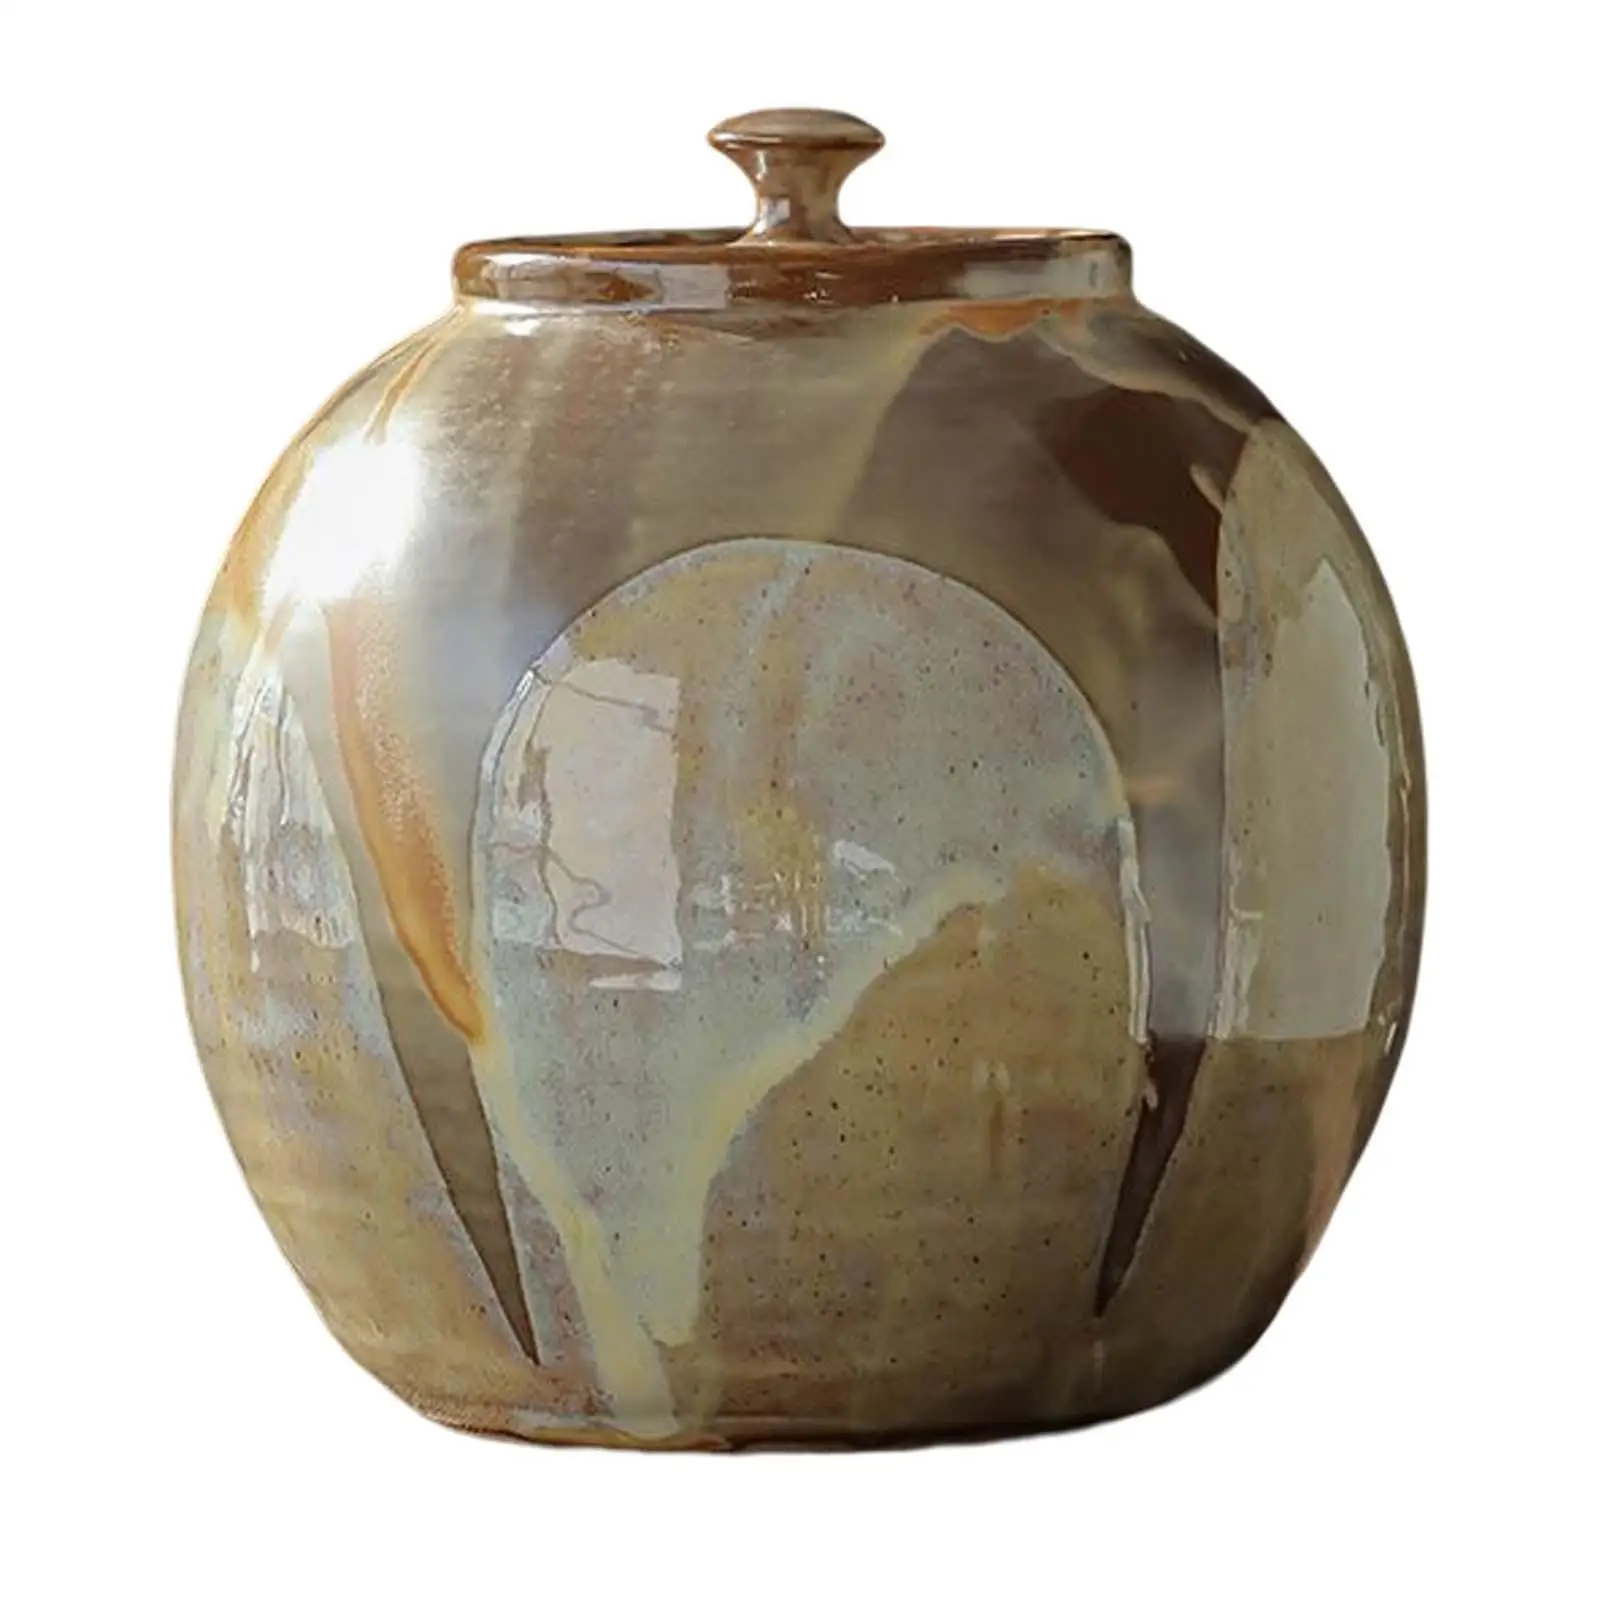 Porcelain Tea Jar Decorative Ceramic Flower Vase Food Storage Container Porcelain Jar with Lid for Tabletop Cabinet Gift Kitchen